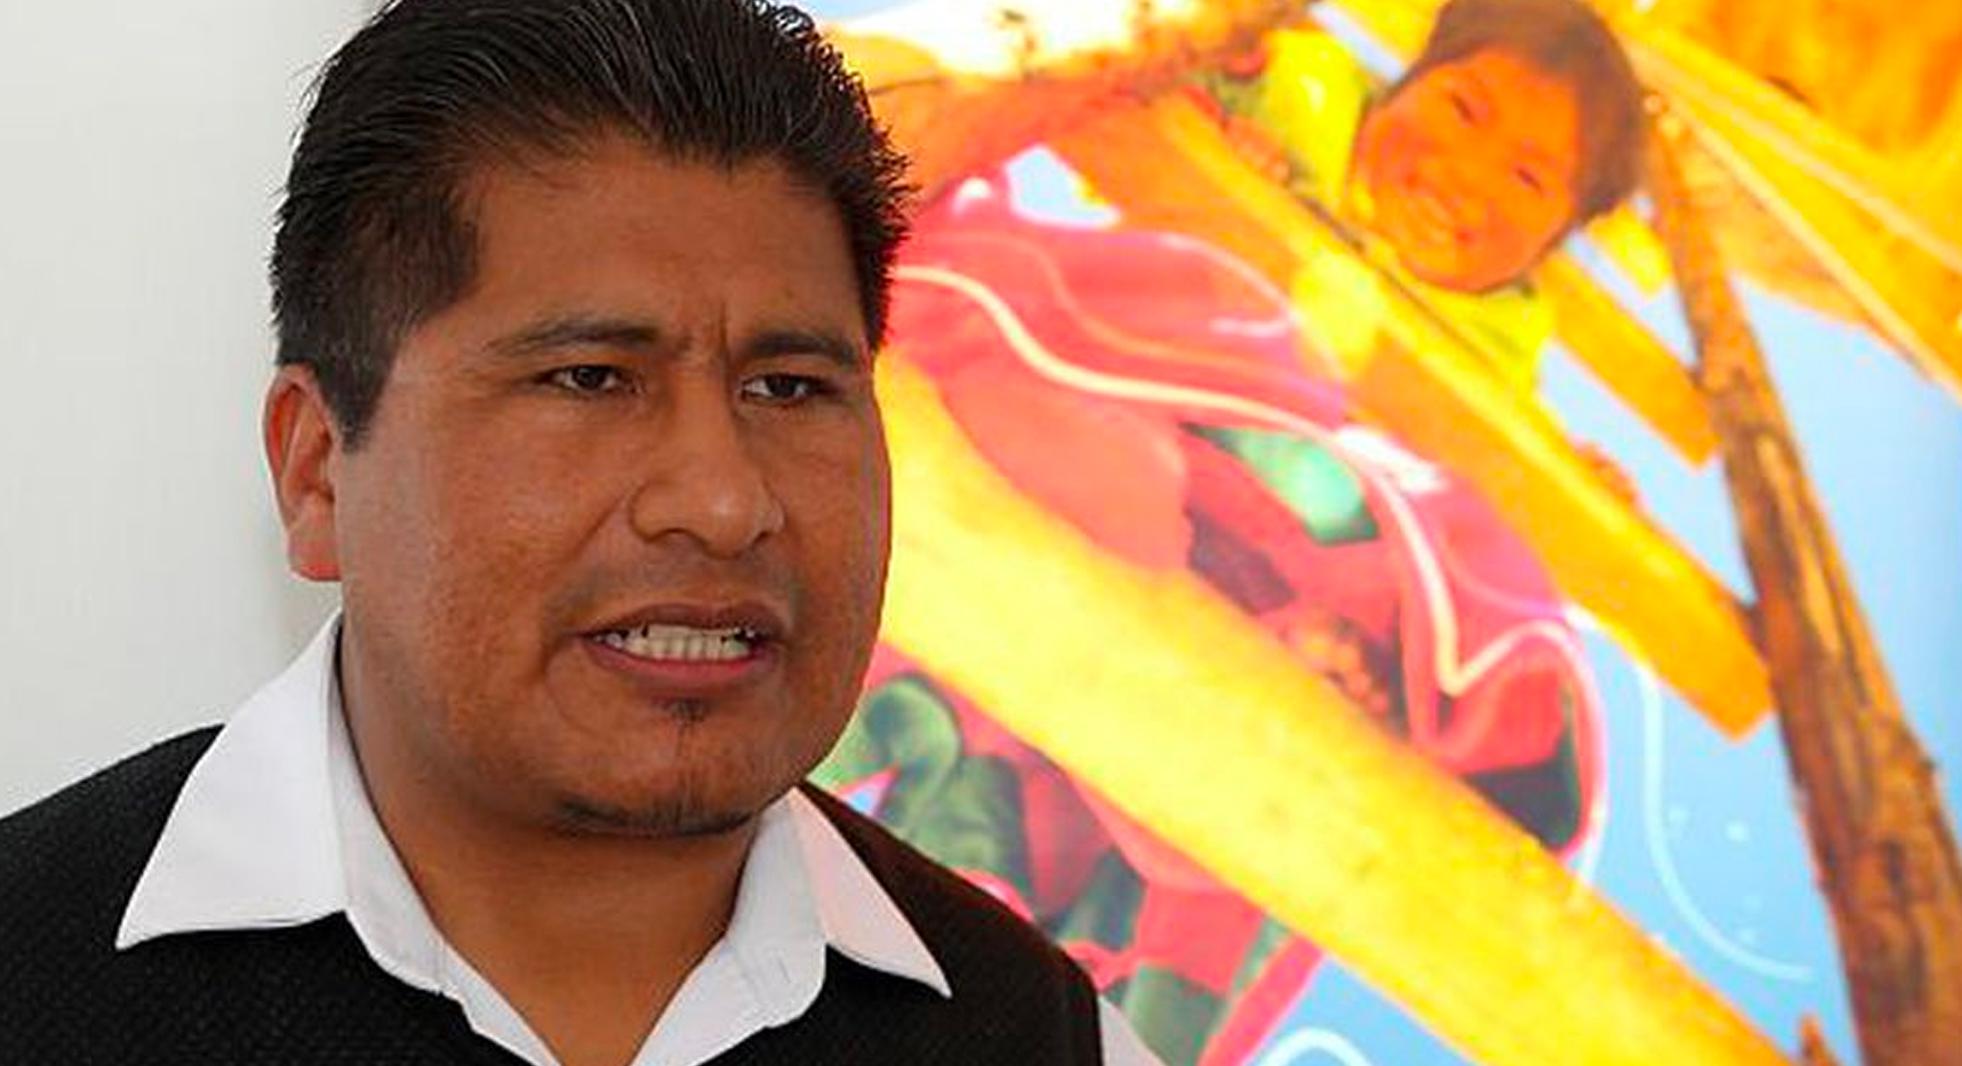 FOTO 1 | 1. Walter Aduviri
El actual gobernador regional de Puno se hizo conocido en el 2011 tras liderar el “Aymarazo”, una serie de protestas contra una minera canadiense. Los actos más graves ocurrieron el 26 de mayo de ese año, con la quema de locales públicos y saqueos en la ciudad de Puno. (Foto: GEC)